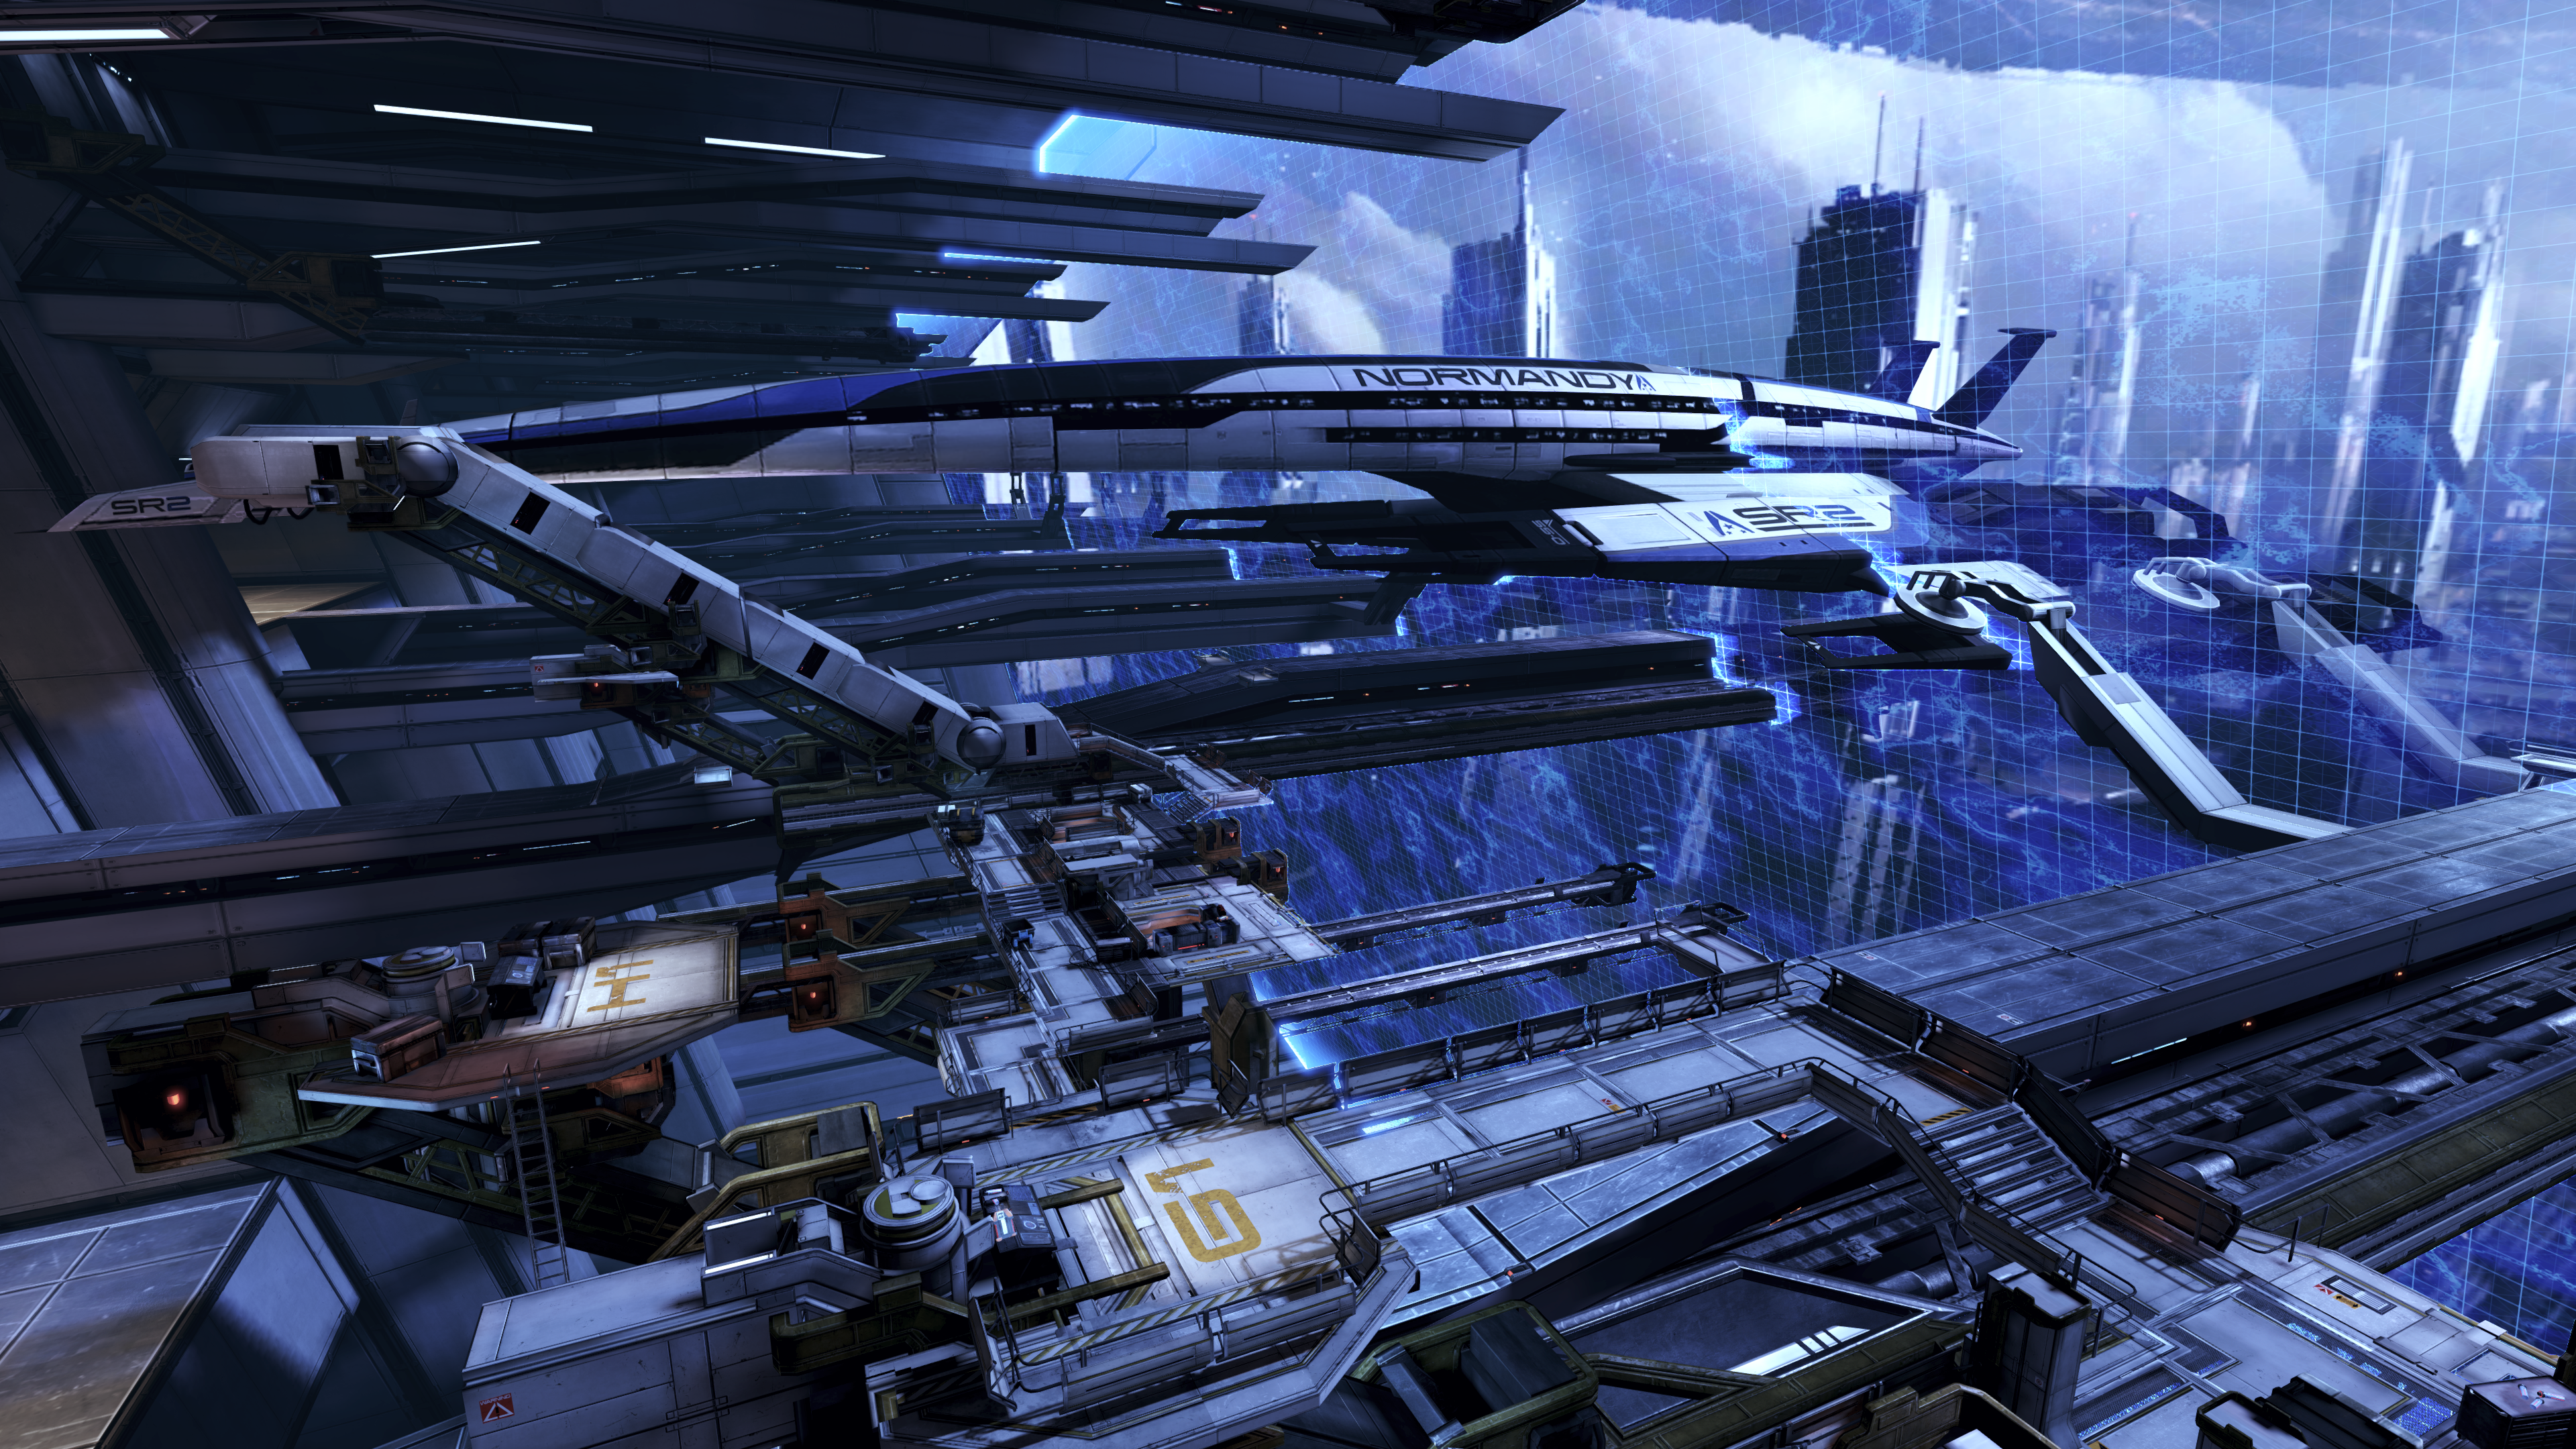 Mass Effect Citadel Mass Effect Normandy SR 2 Science Fiction Mass Effect 3 3840x2160